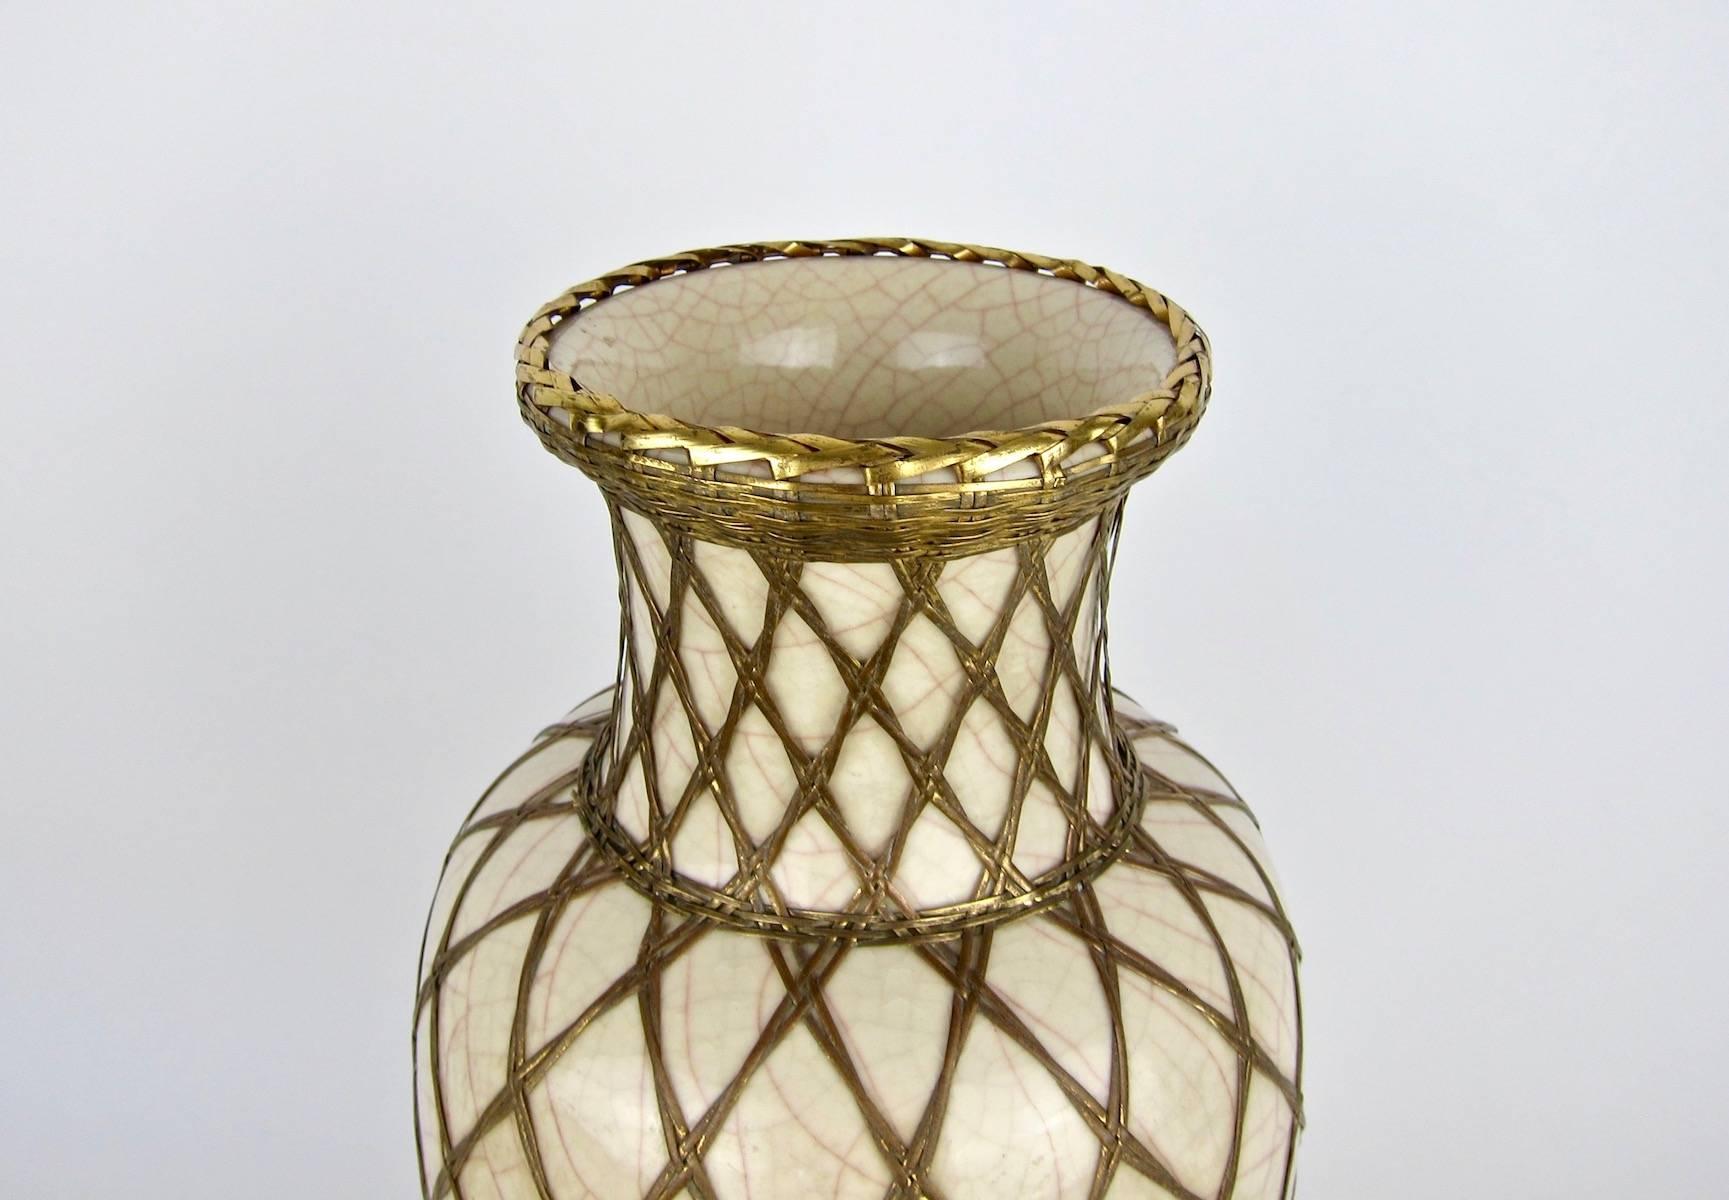 Glazed Large Japanese Pottery Vase with Craquelure Glaze and Basket Weave Overlay